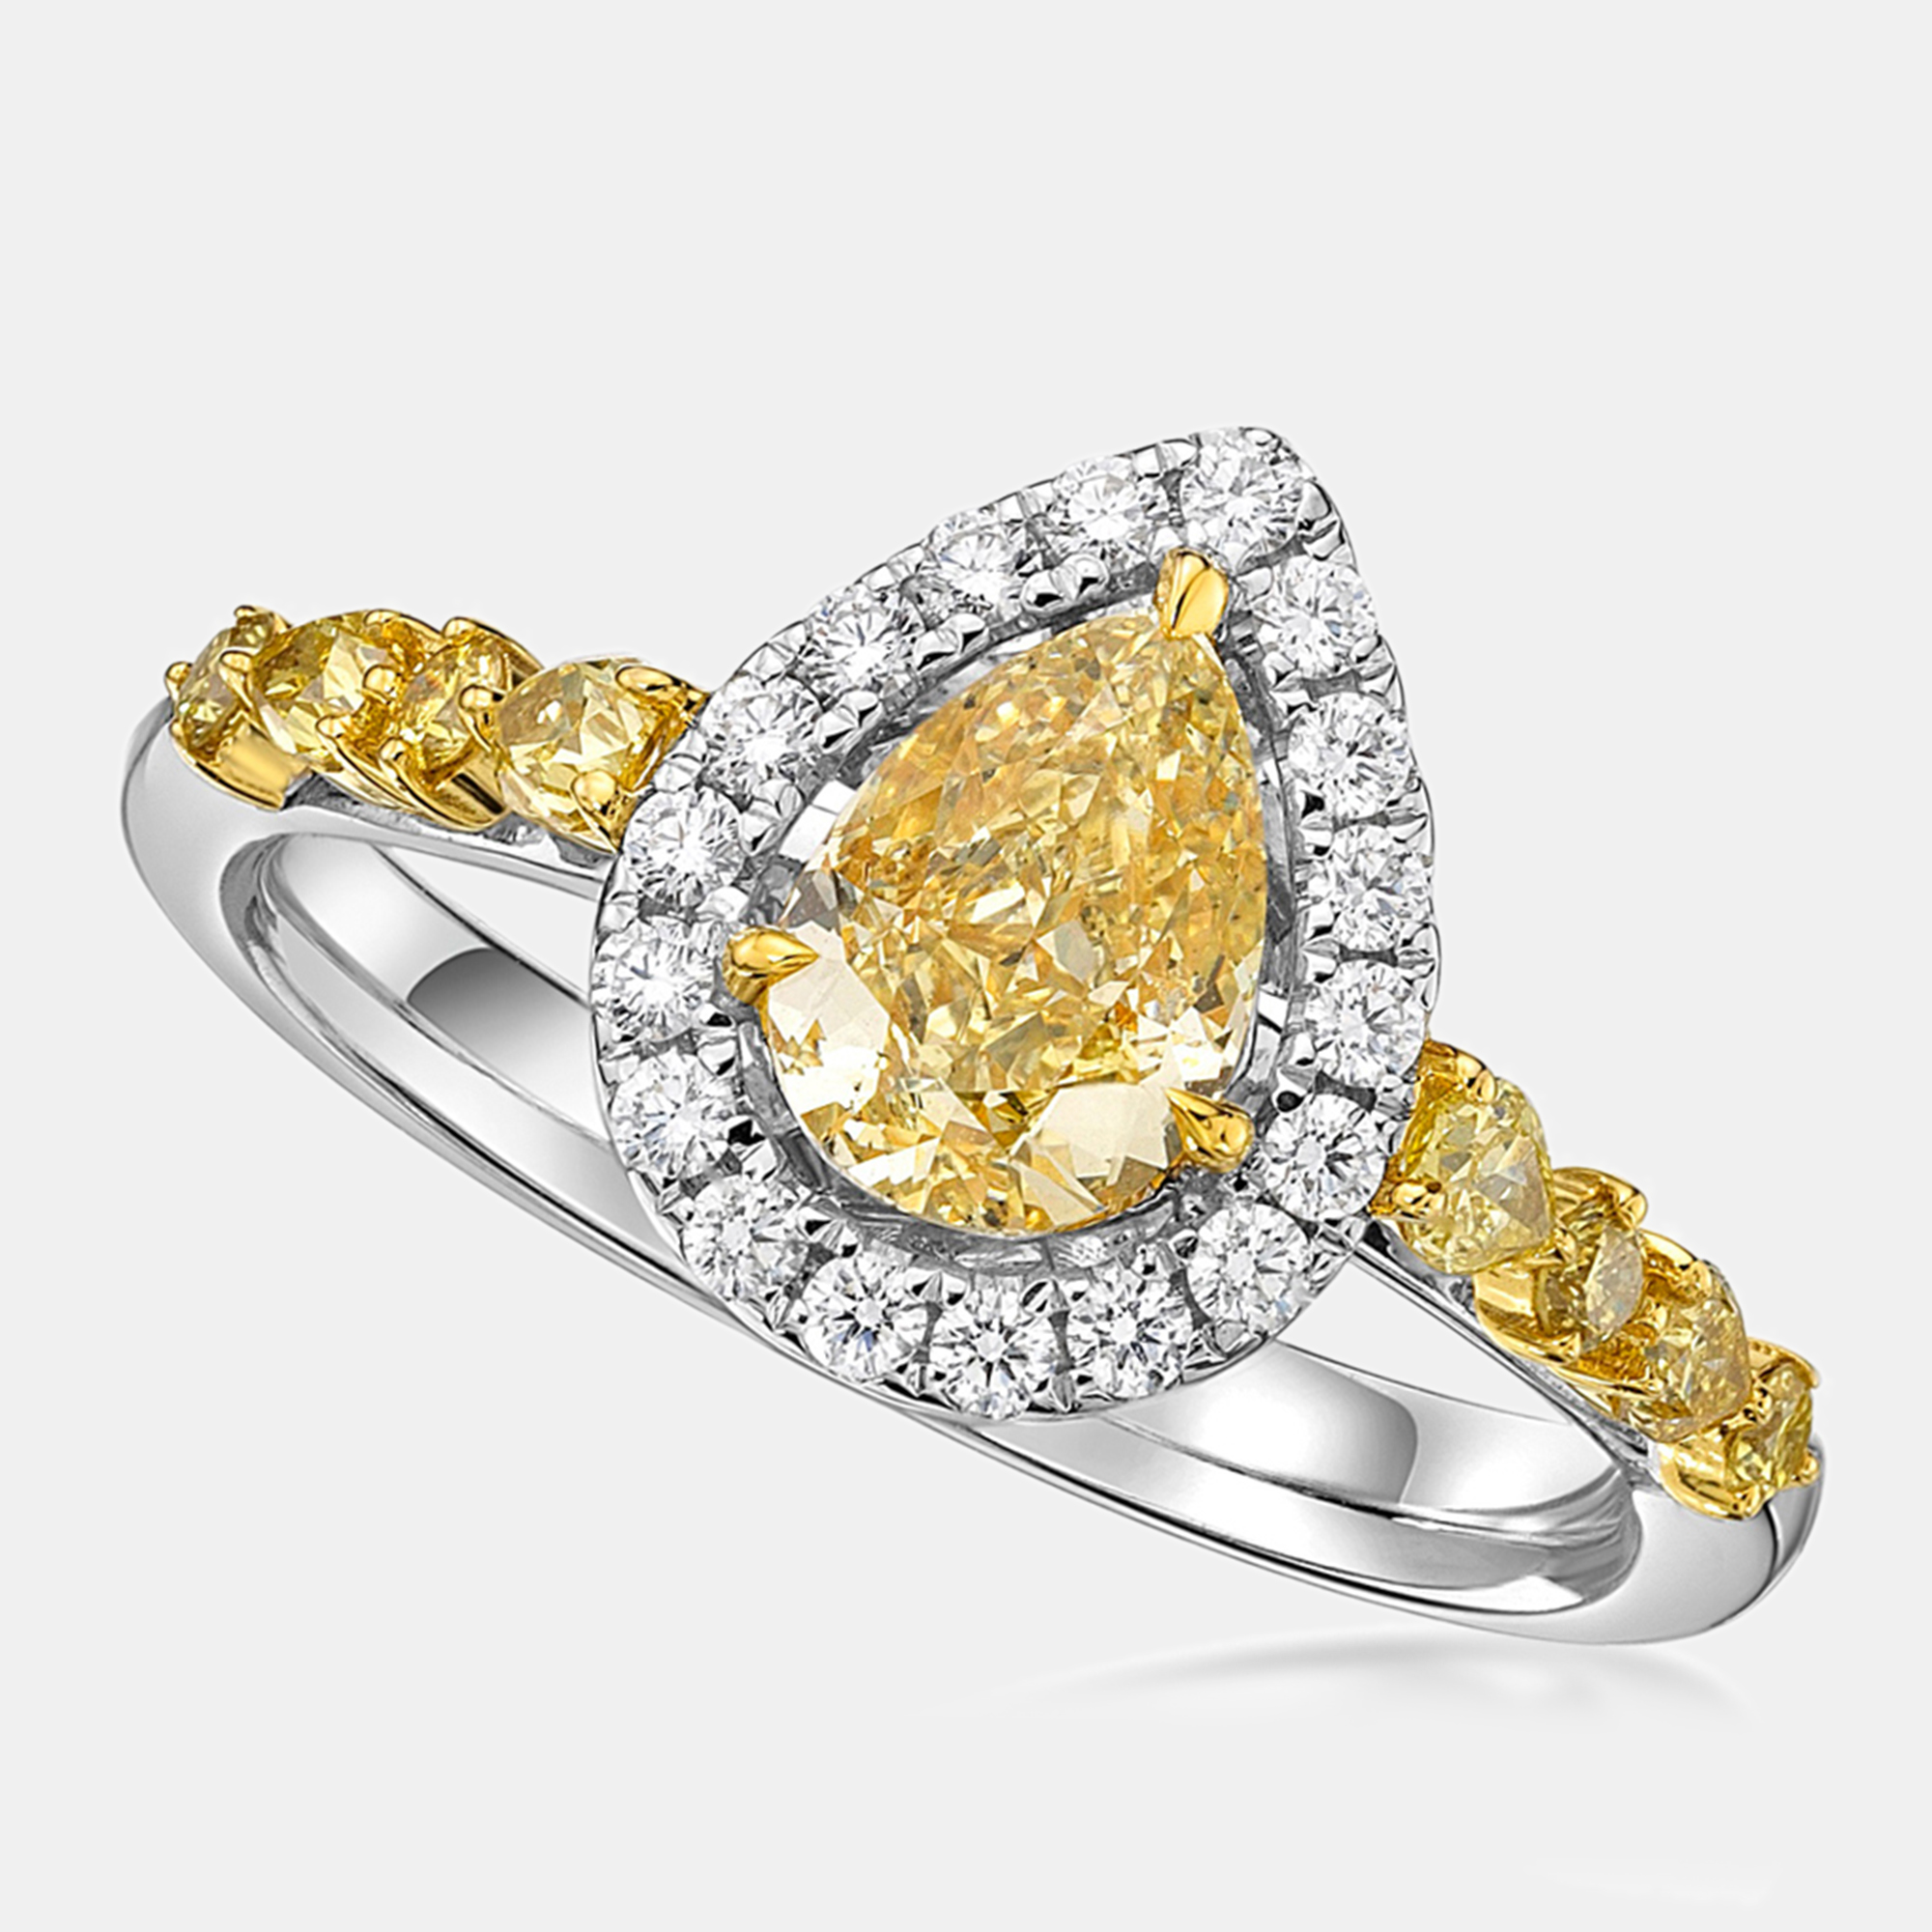 SAMA 18K Yellow & White Gold Ring US- 6.75 / L-14